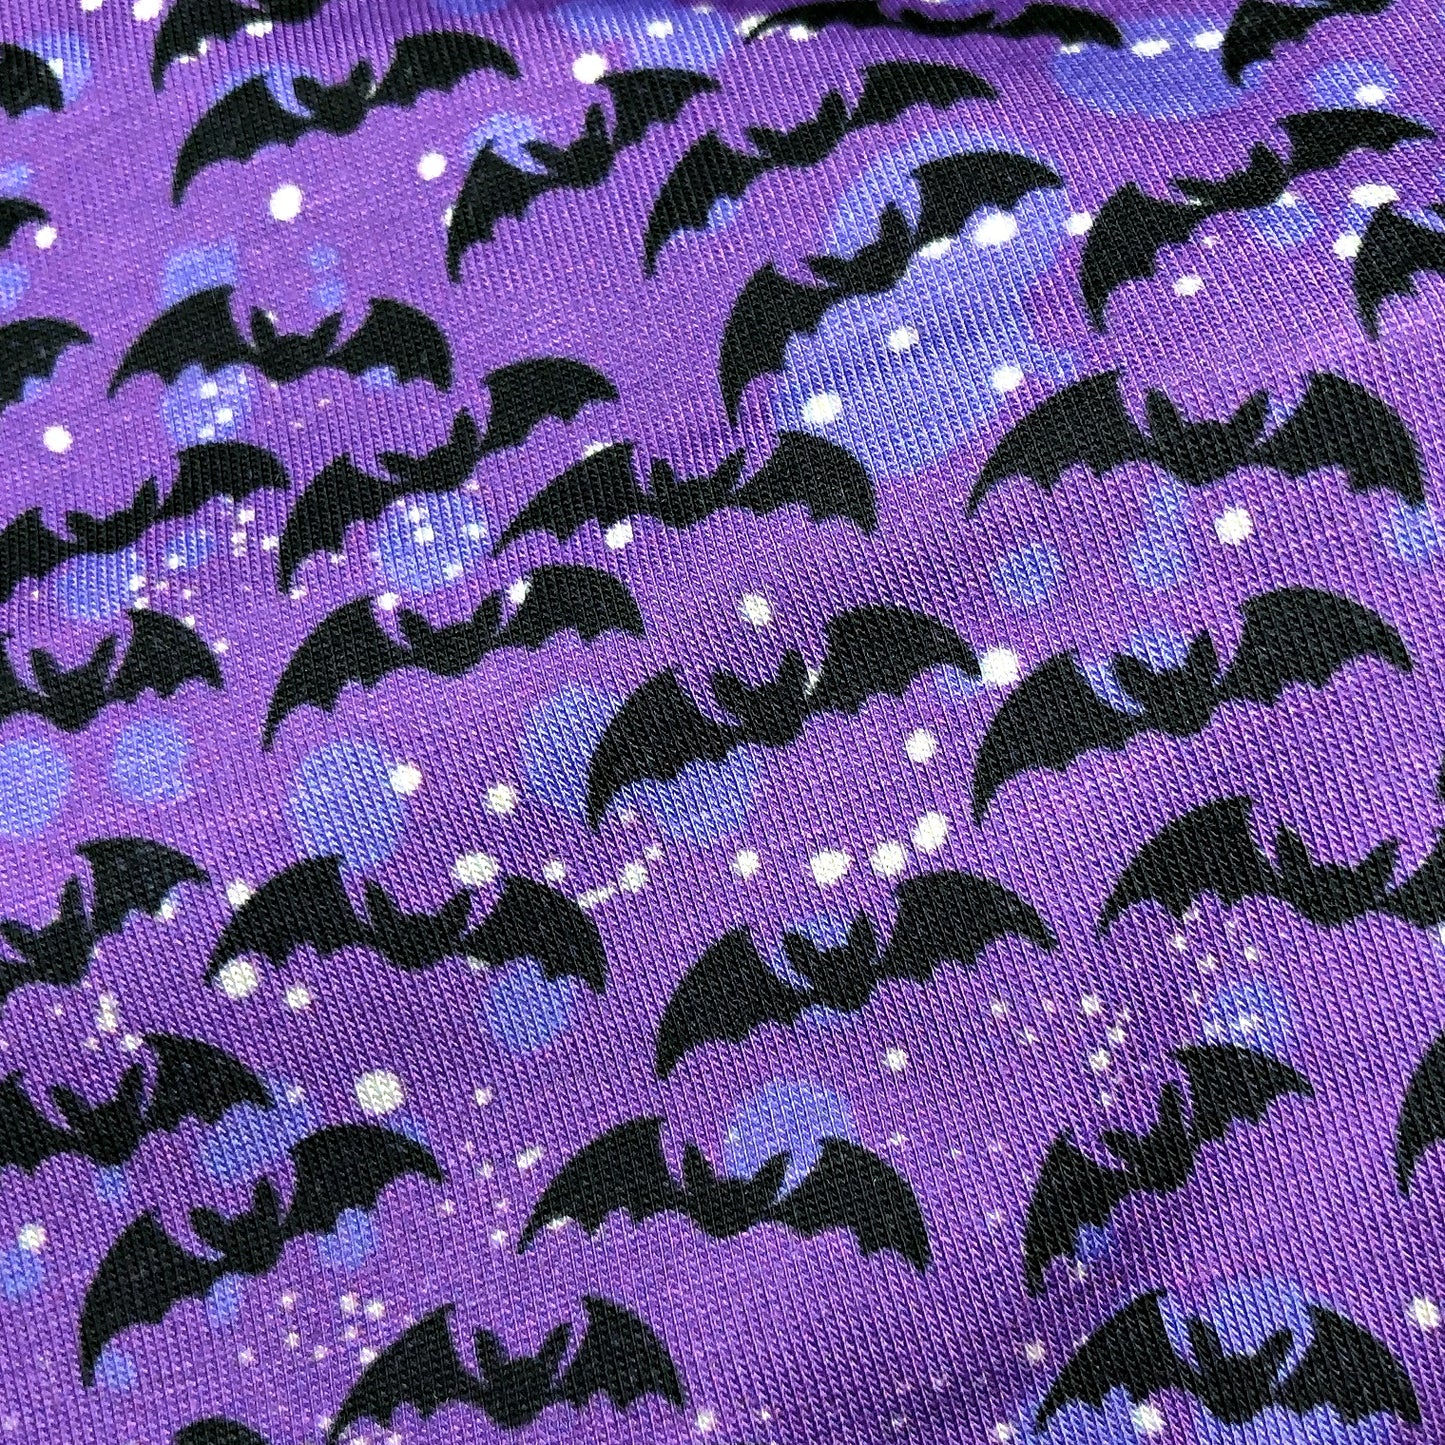 Wide Purple Bat Halloween Headband for Women